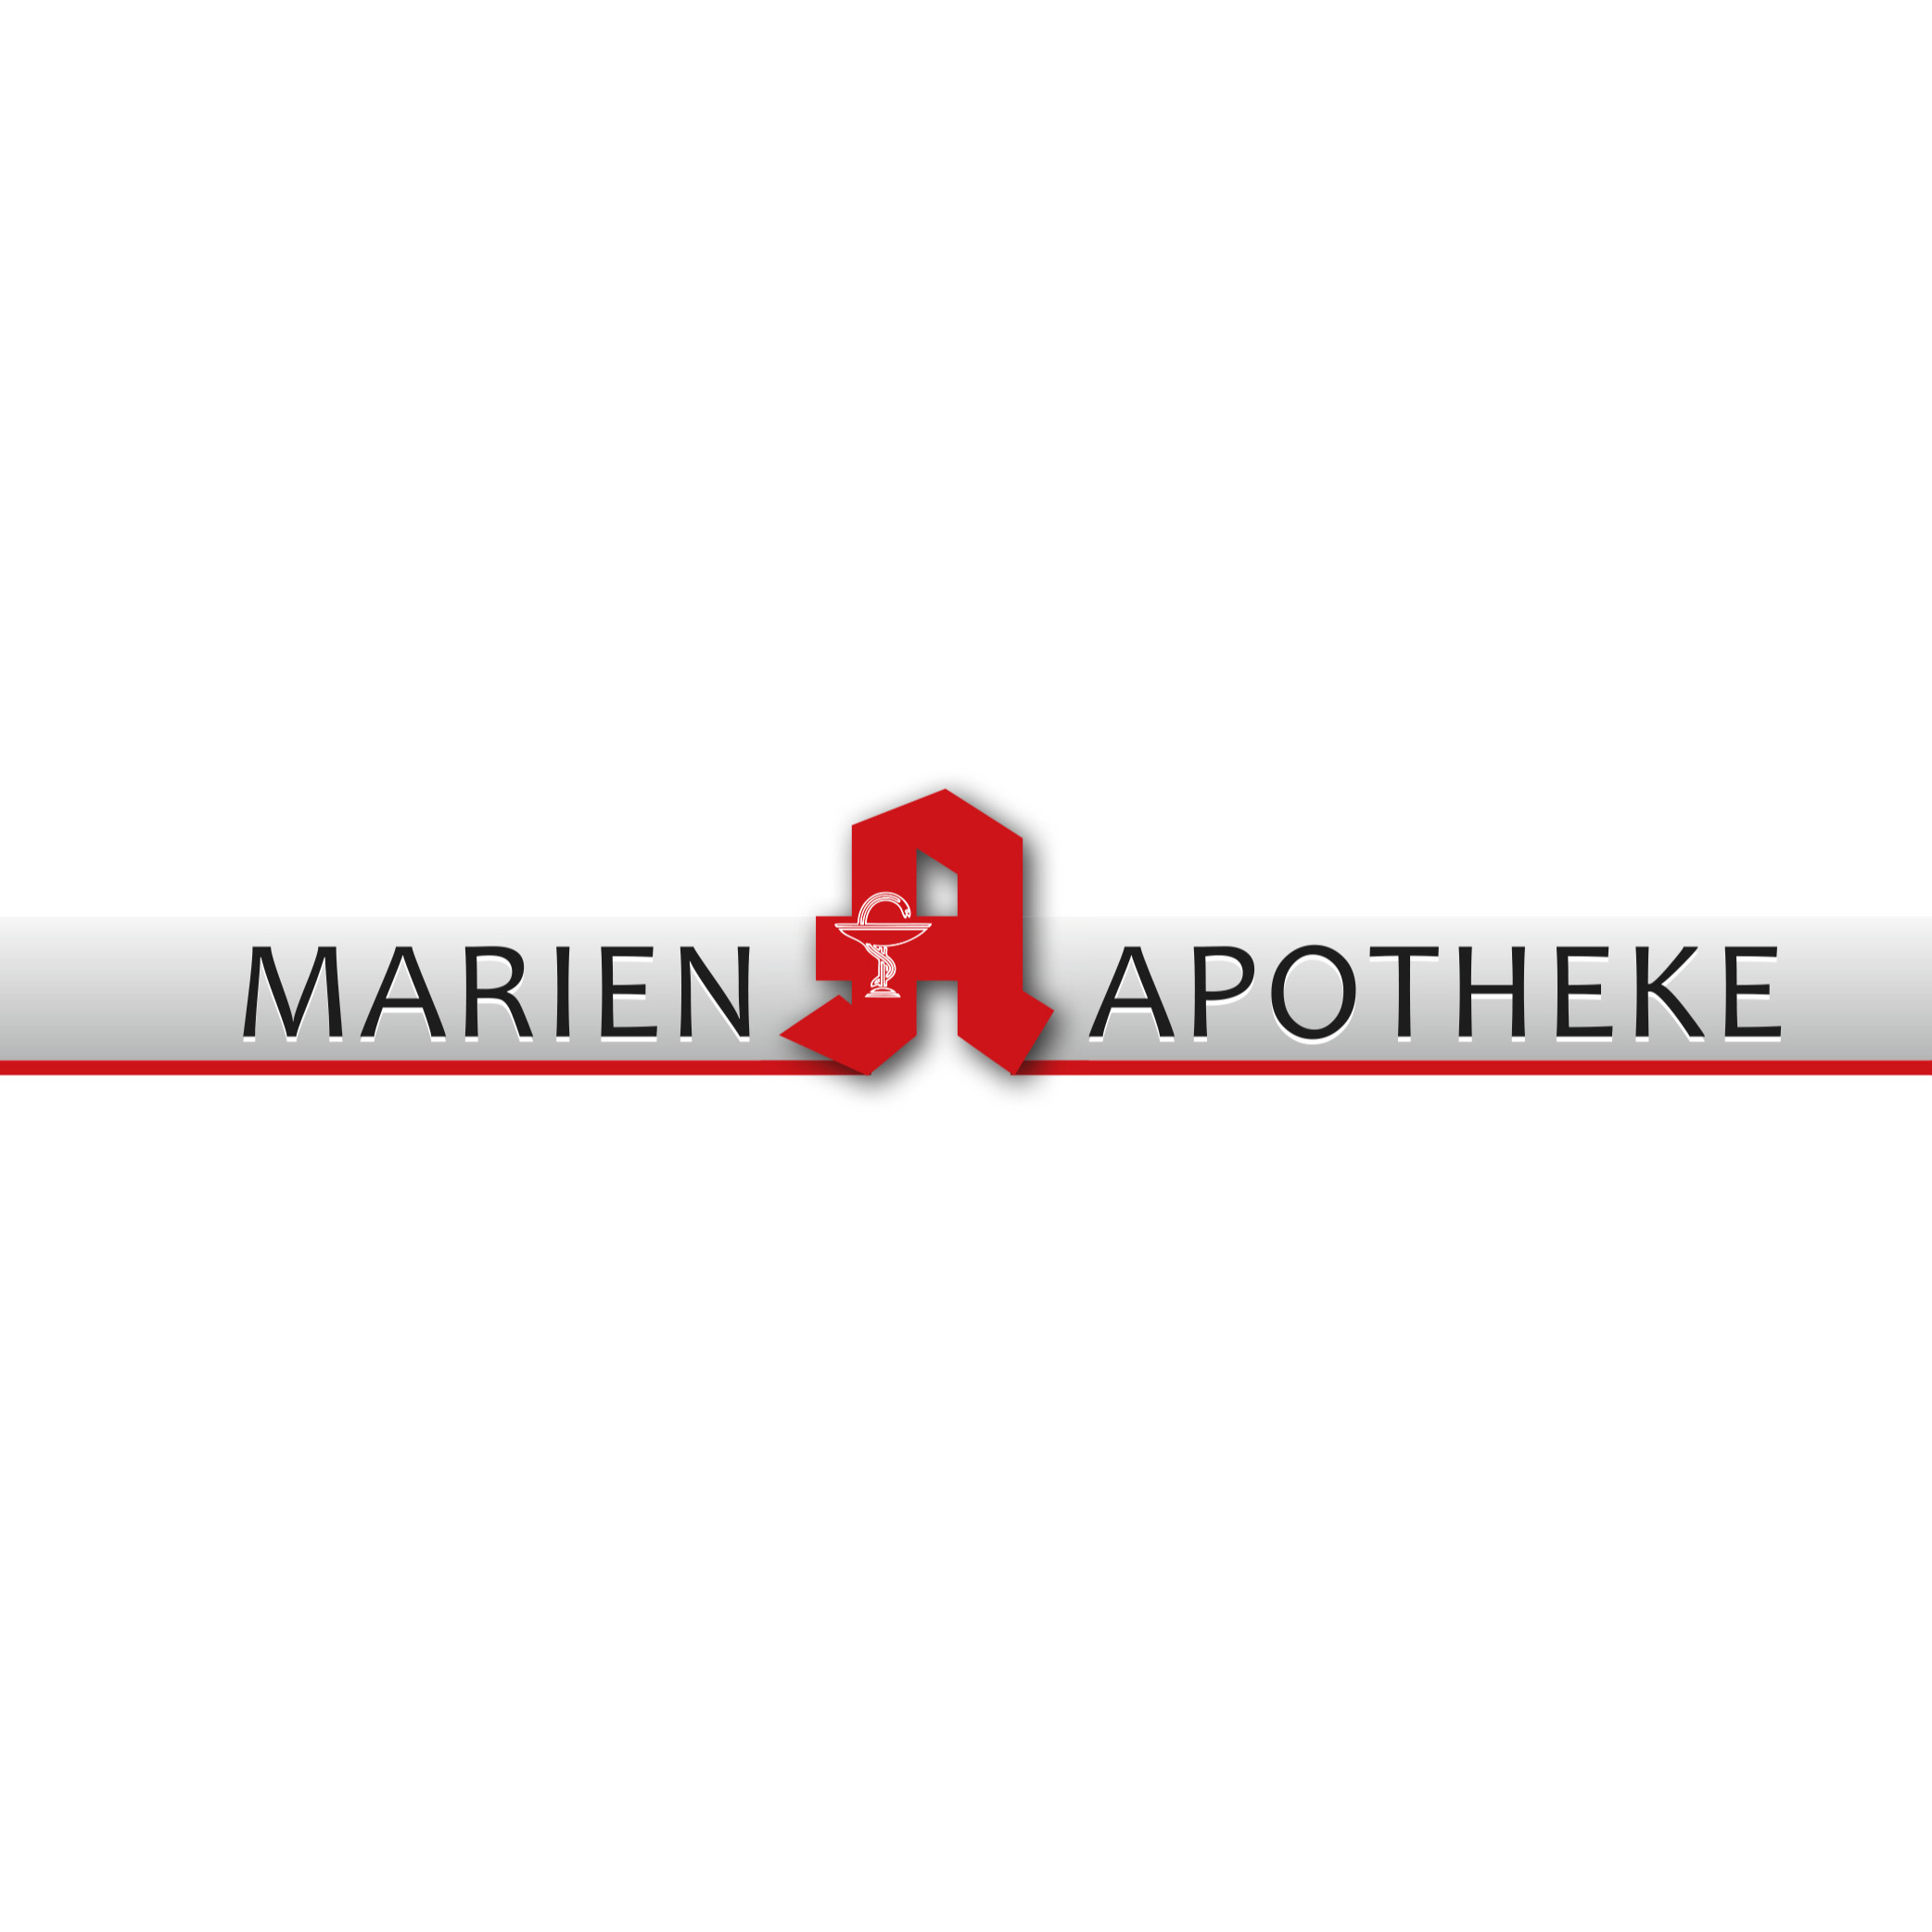 Marien-Apotheke Anke Böhmen & Karin Zweigle OHG in Oldenburg in Oldenburg - Logo